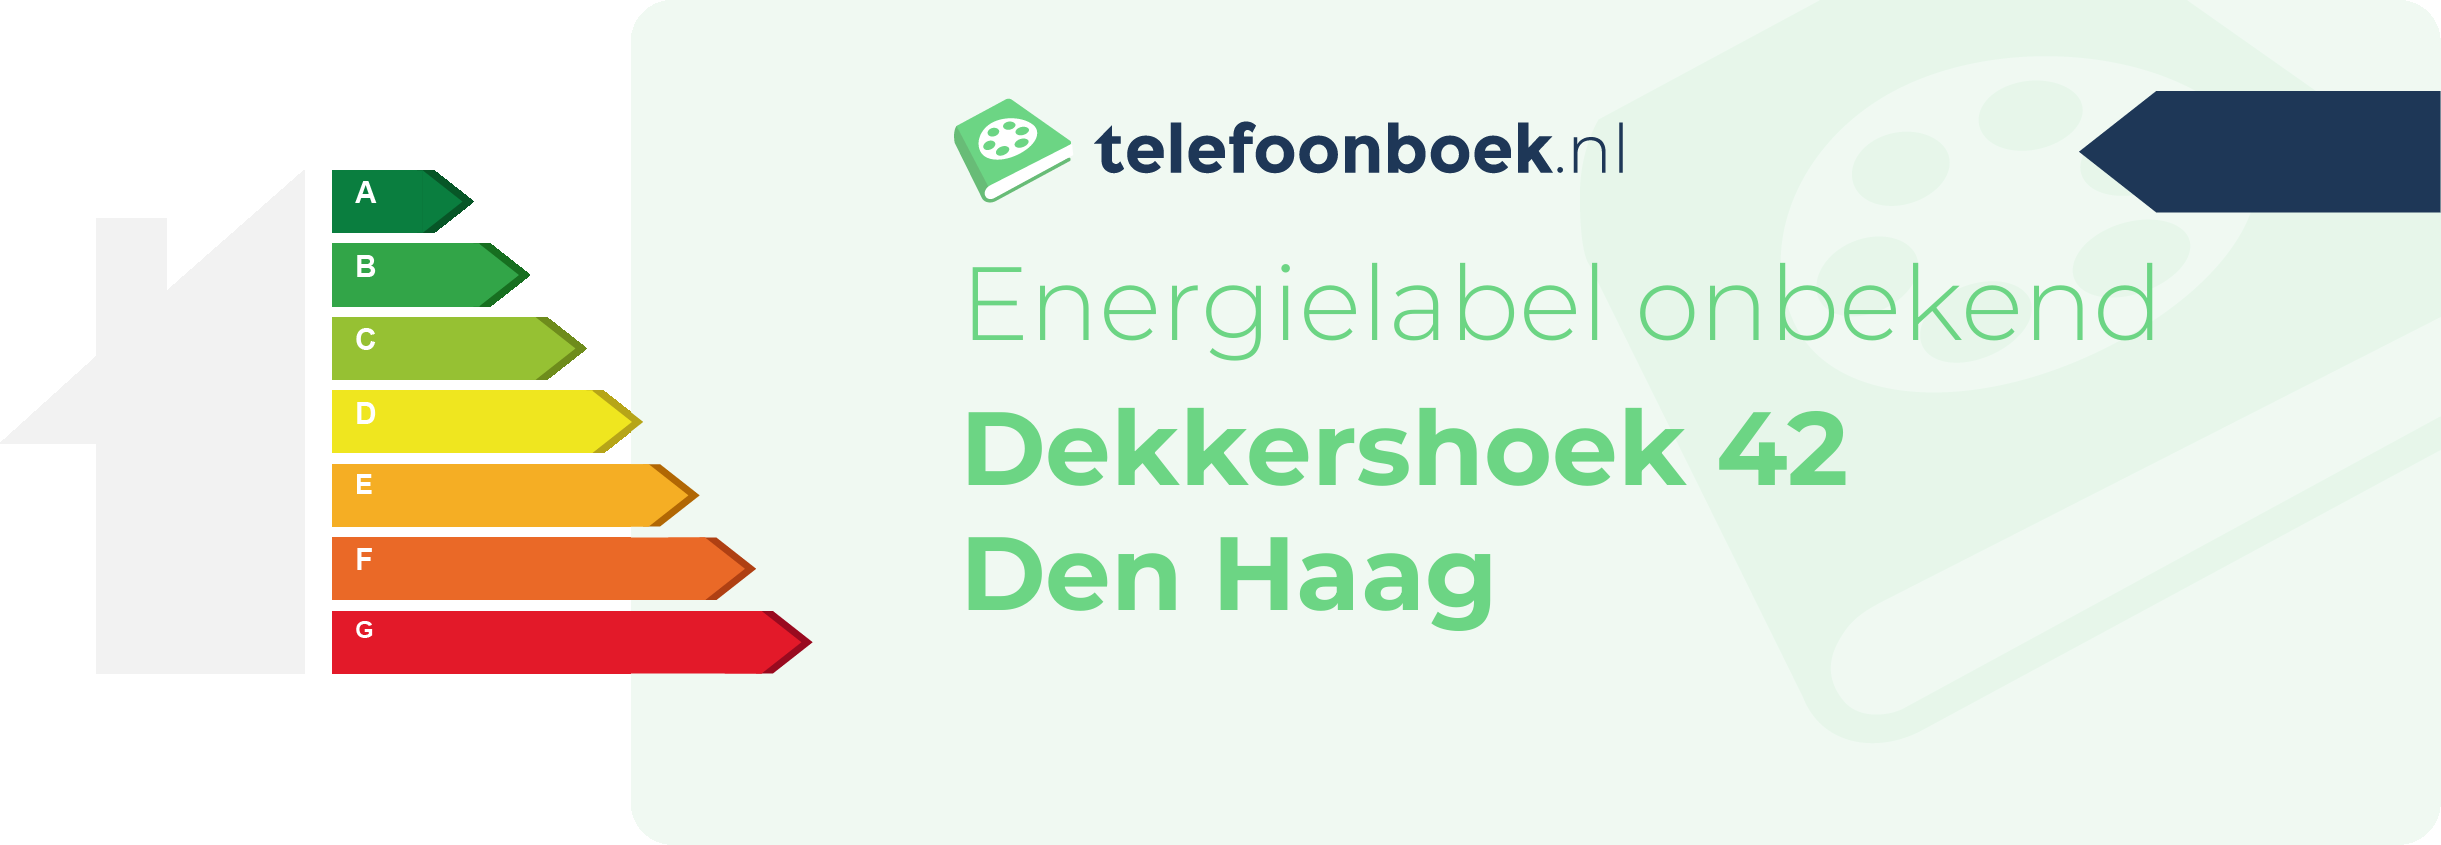 Energielabel Dekkershoek 42 Den Haag